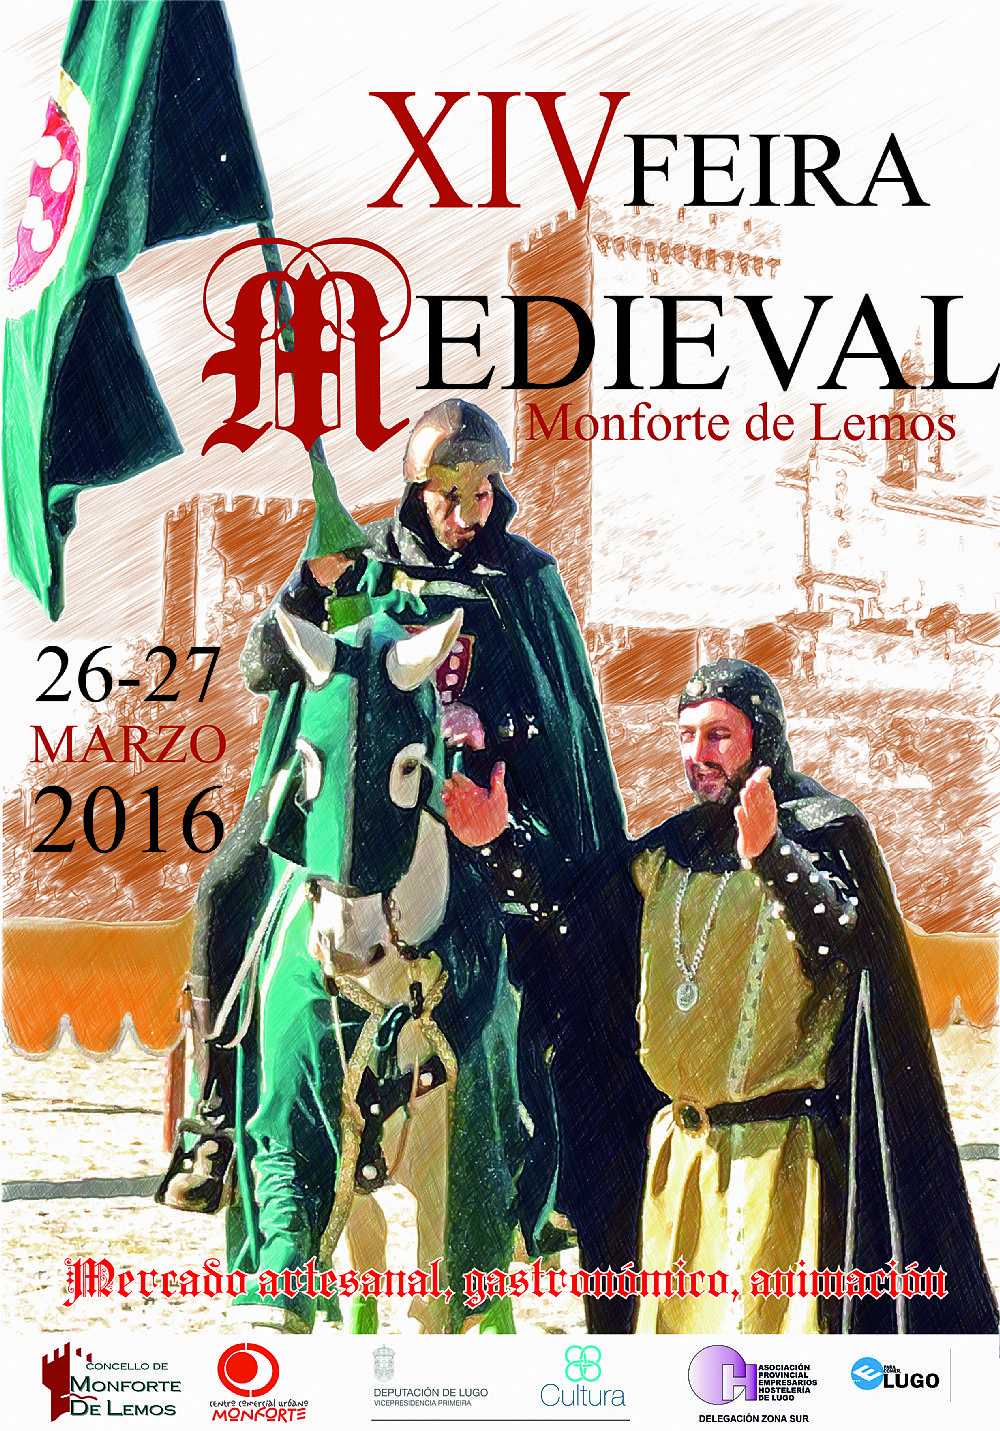 Convocados los concursos de trajes y decoración de la Feira Medieval de Monforte de Lemos , Lugo